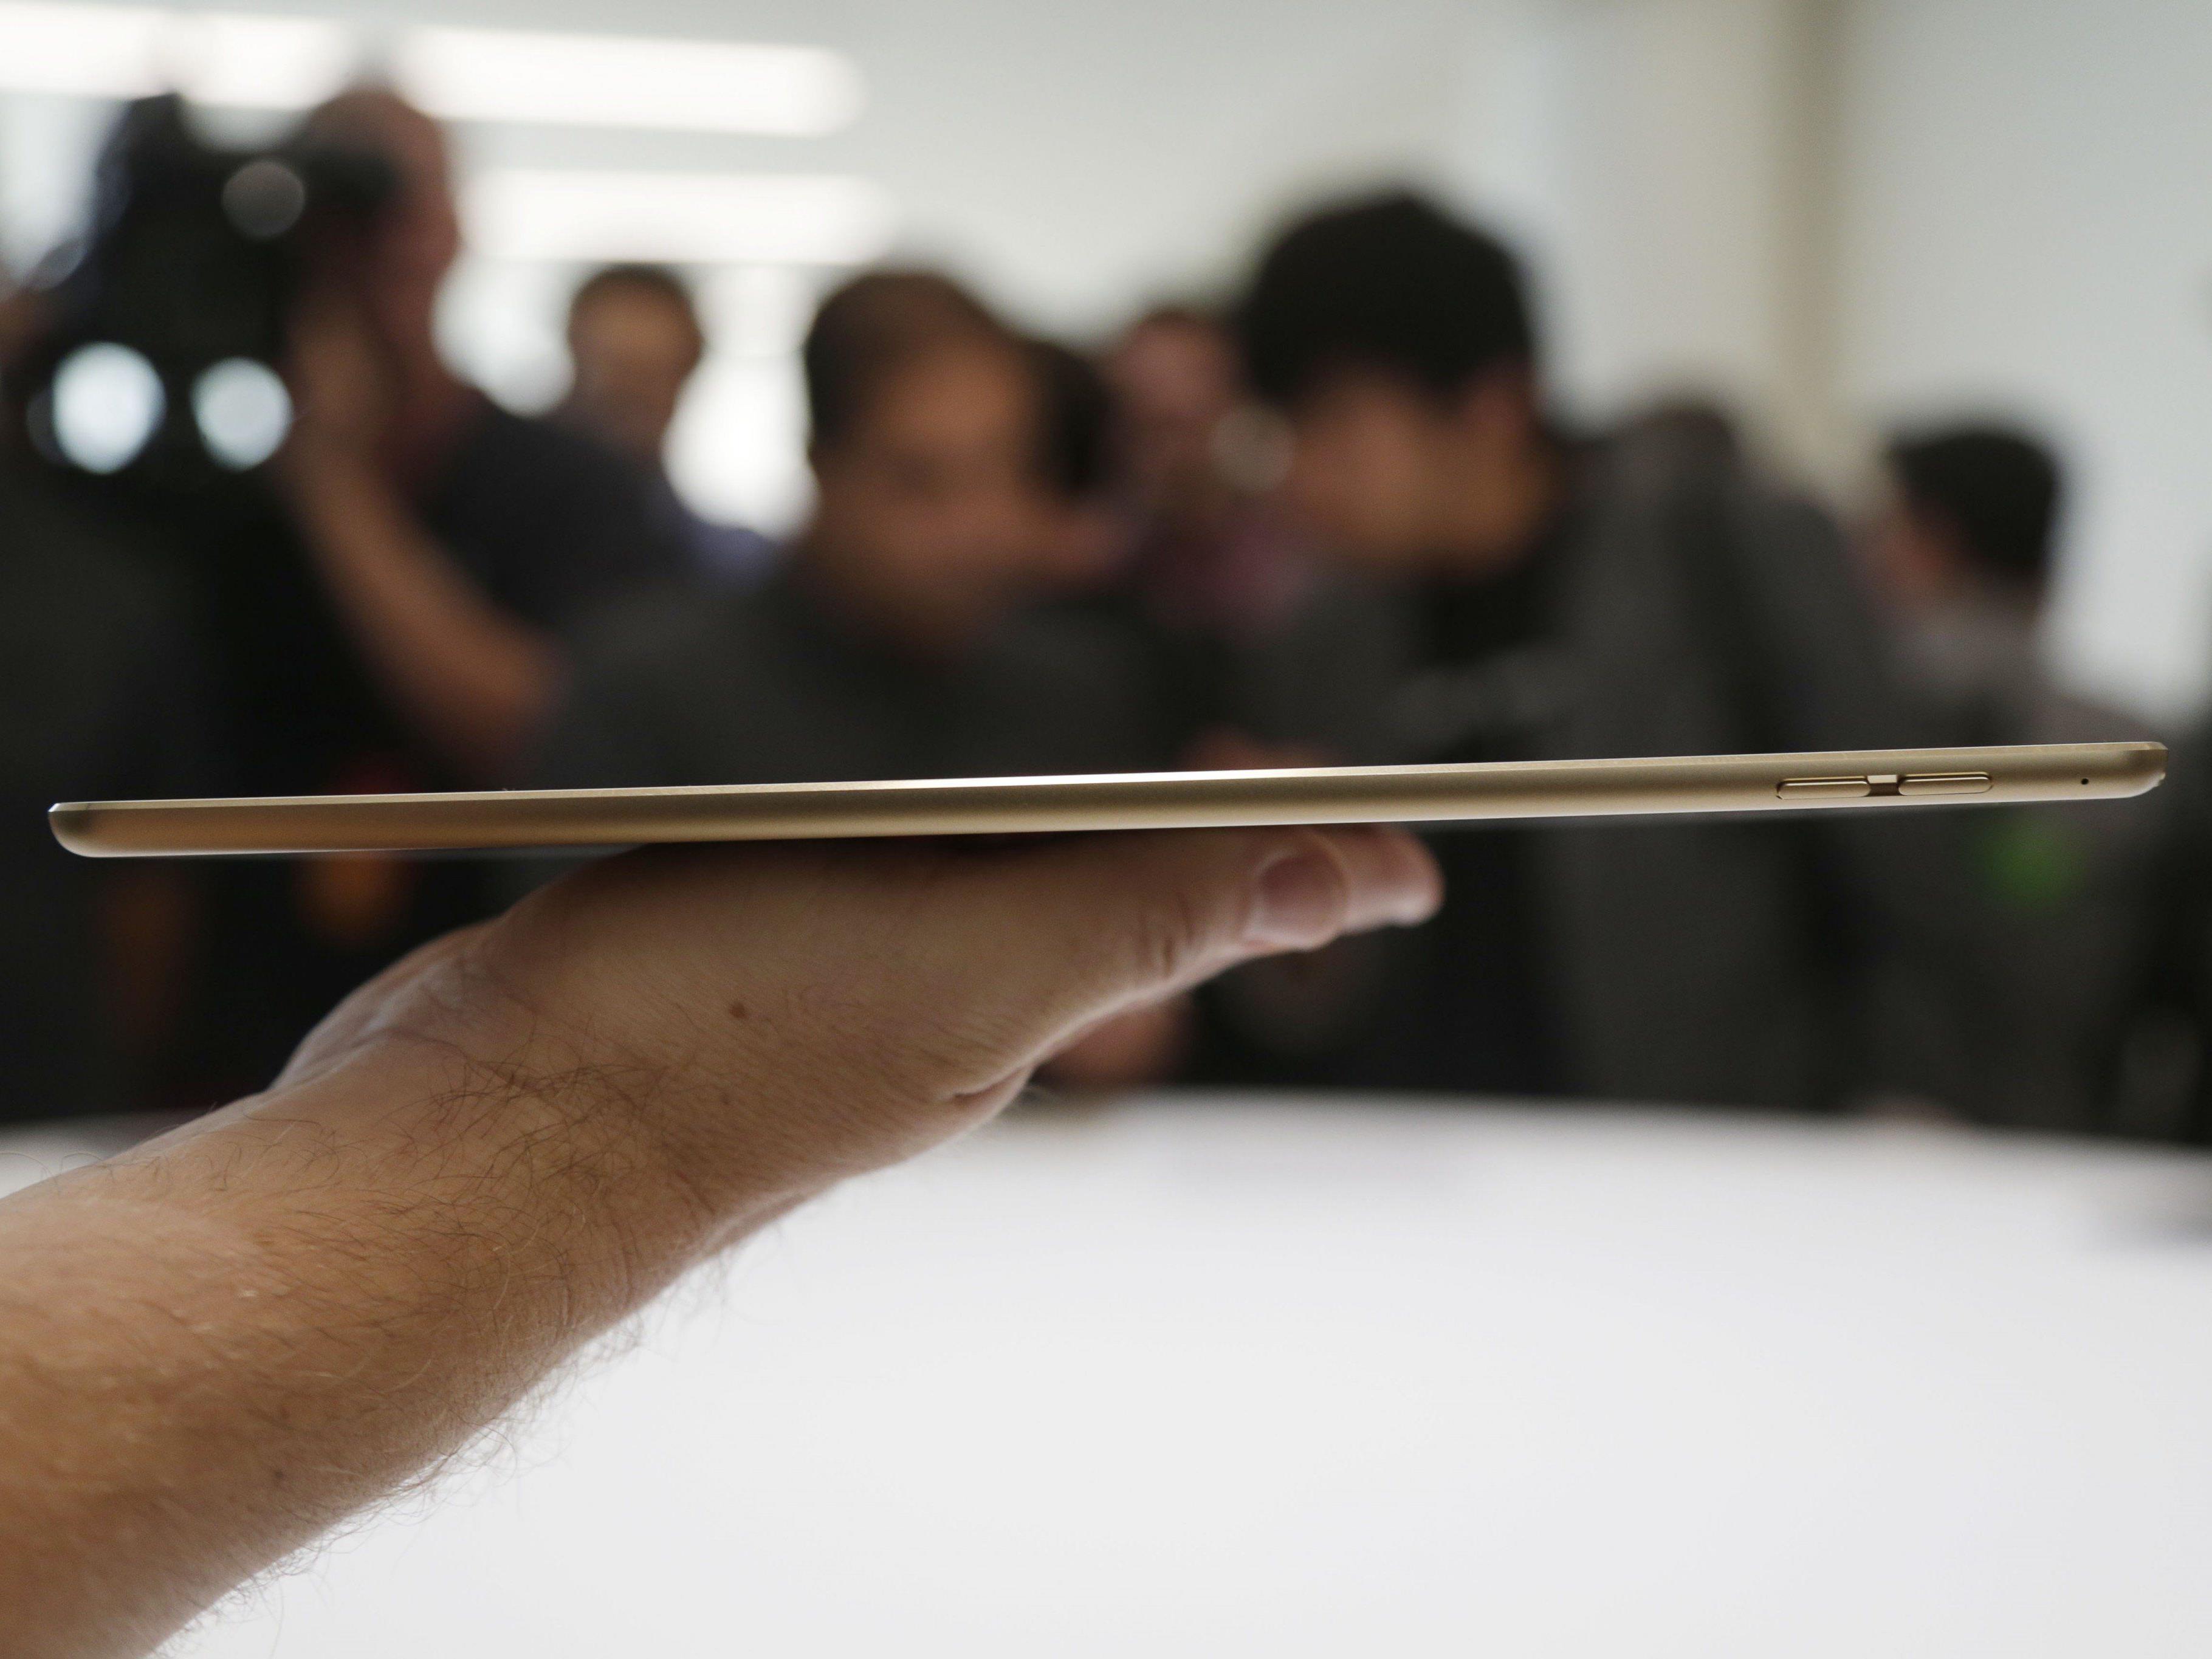 Das "dünnste Tablet der Welt" verbiegt sich leider recht leicht und verärgert die Apple-Kunden.